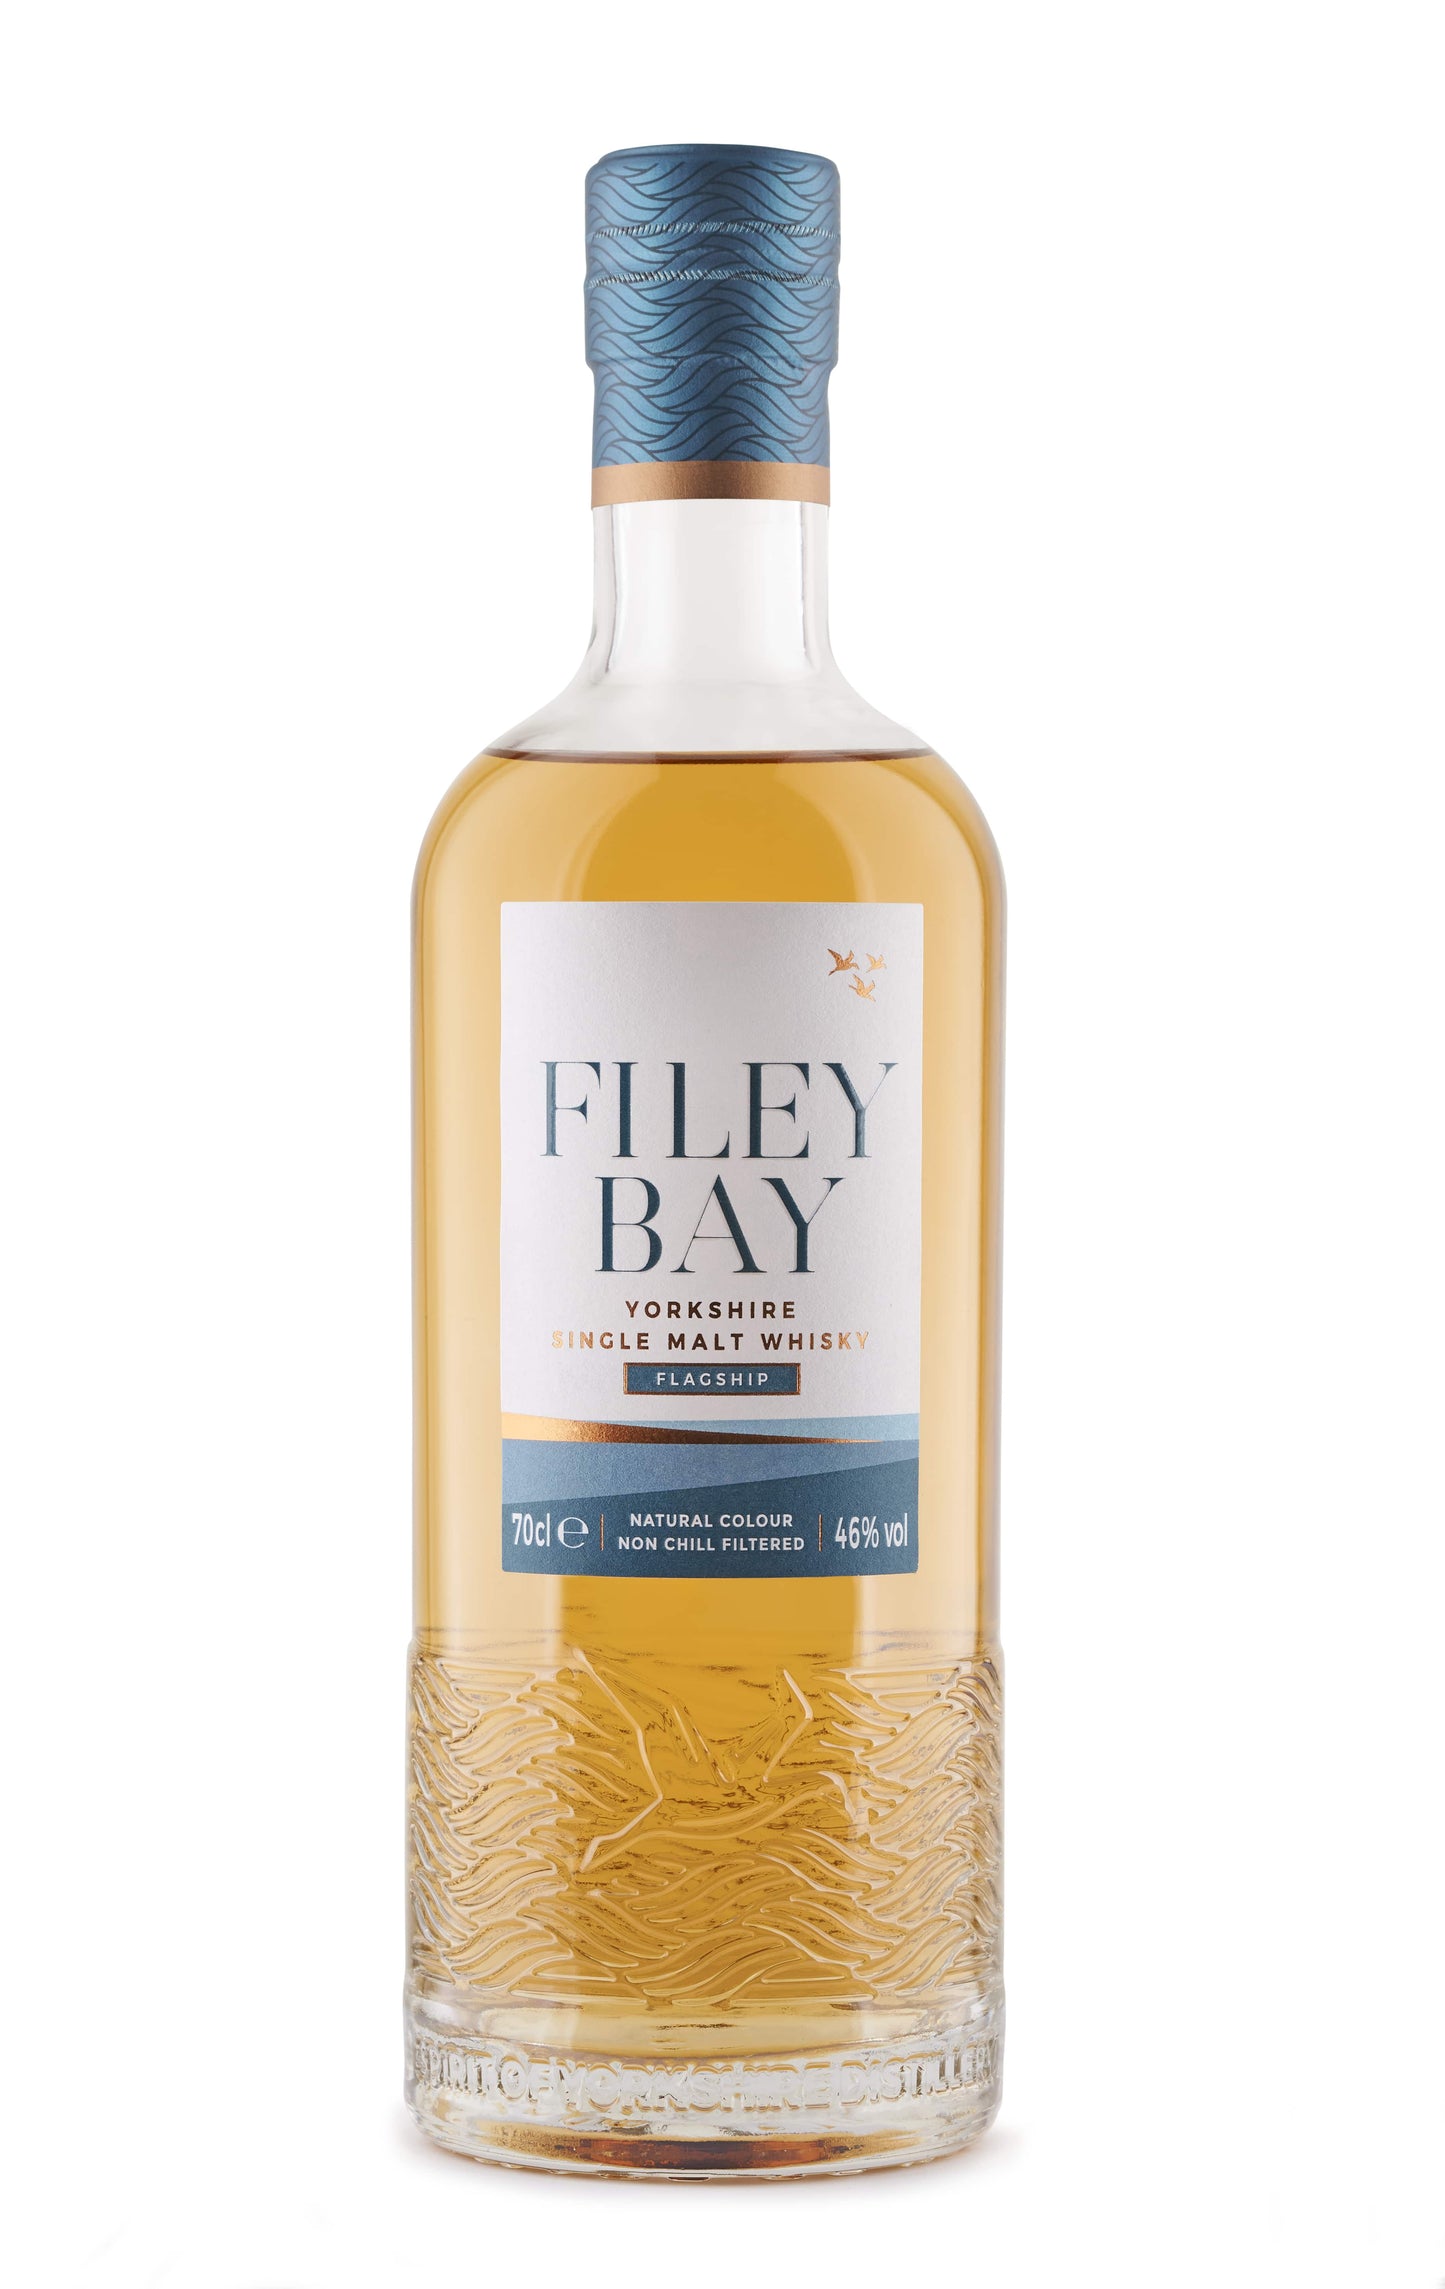 Filey Bay - Flagship - Single Malt Scotch Whisky